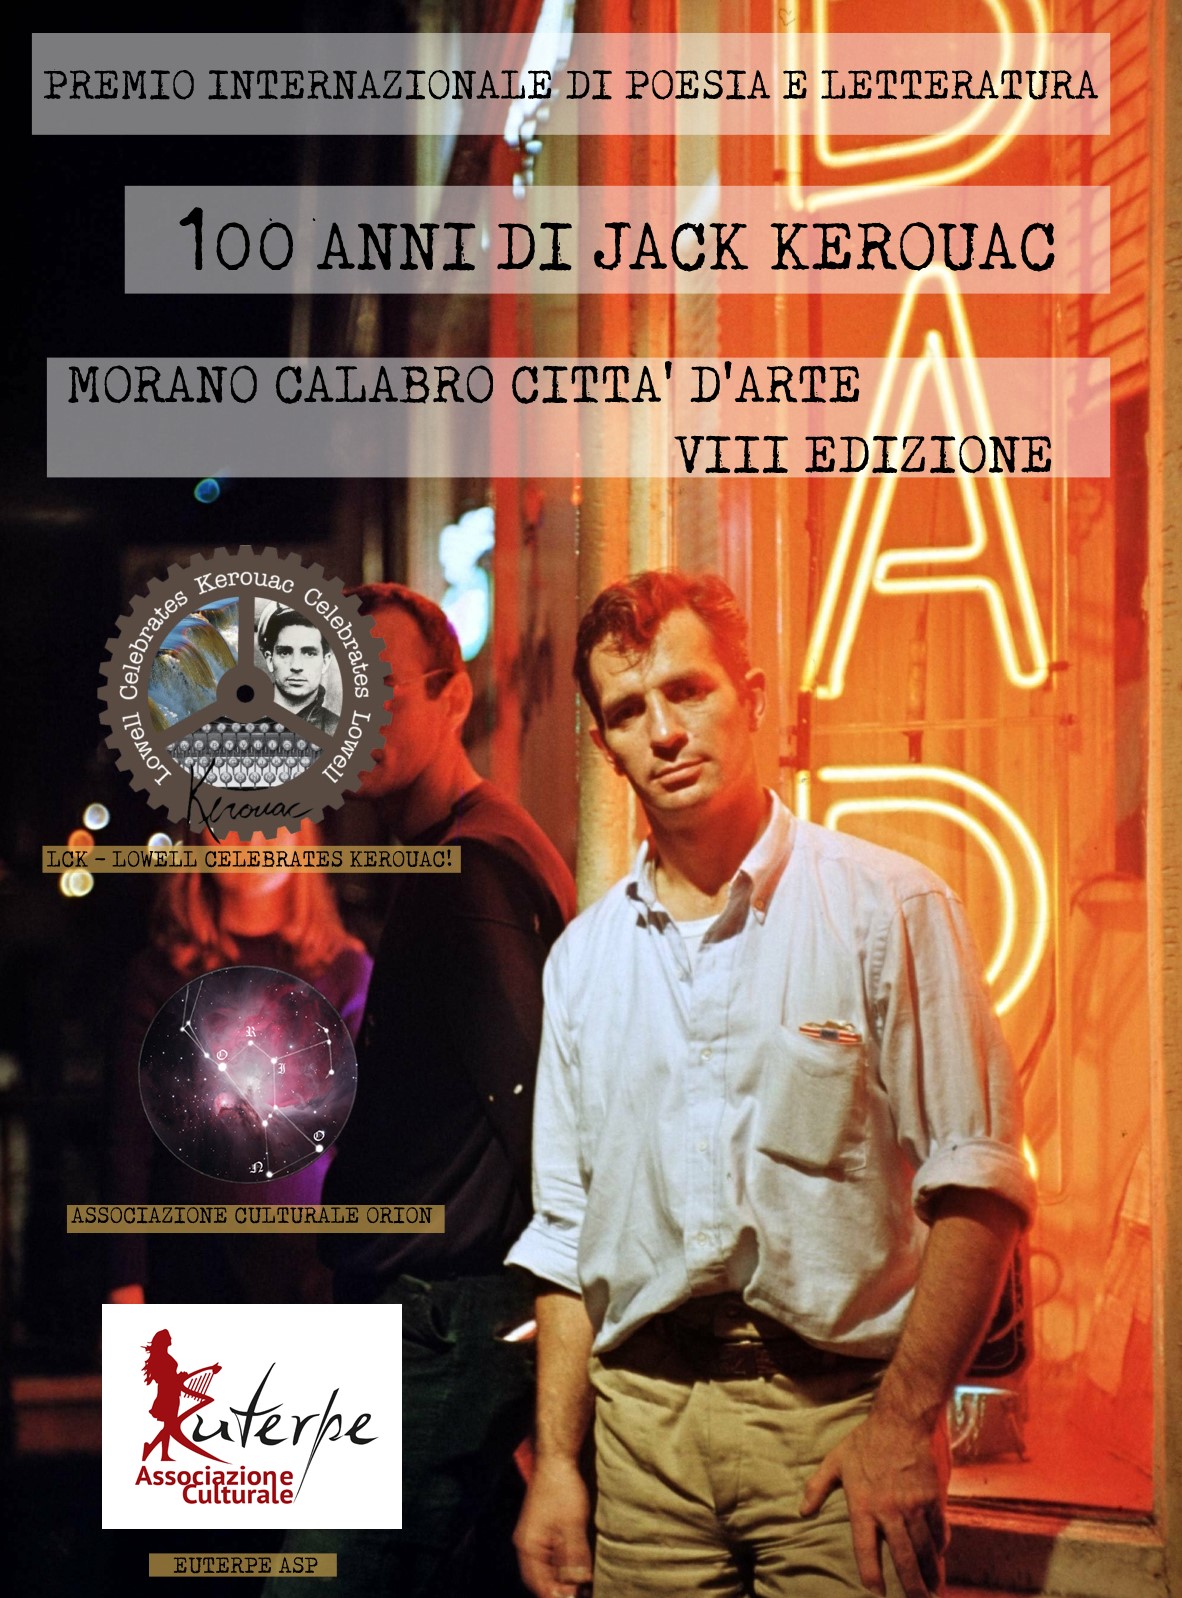 Premio Internazionale di Poesia e Letteratura "100 anni di Jack Kerouac" – Morano Calabro Città d'Arte VIII Edizione